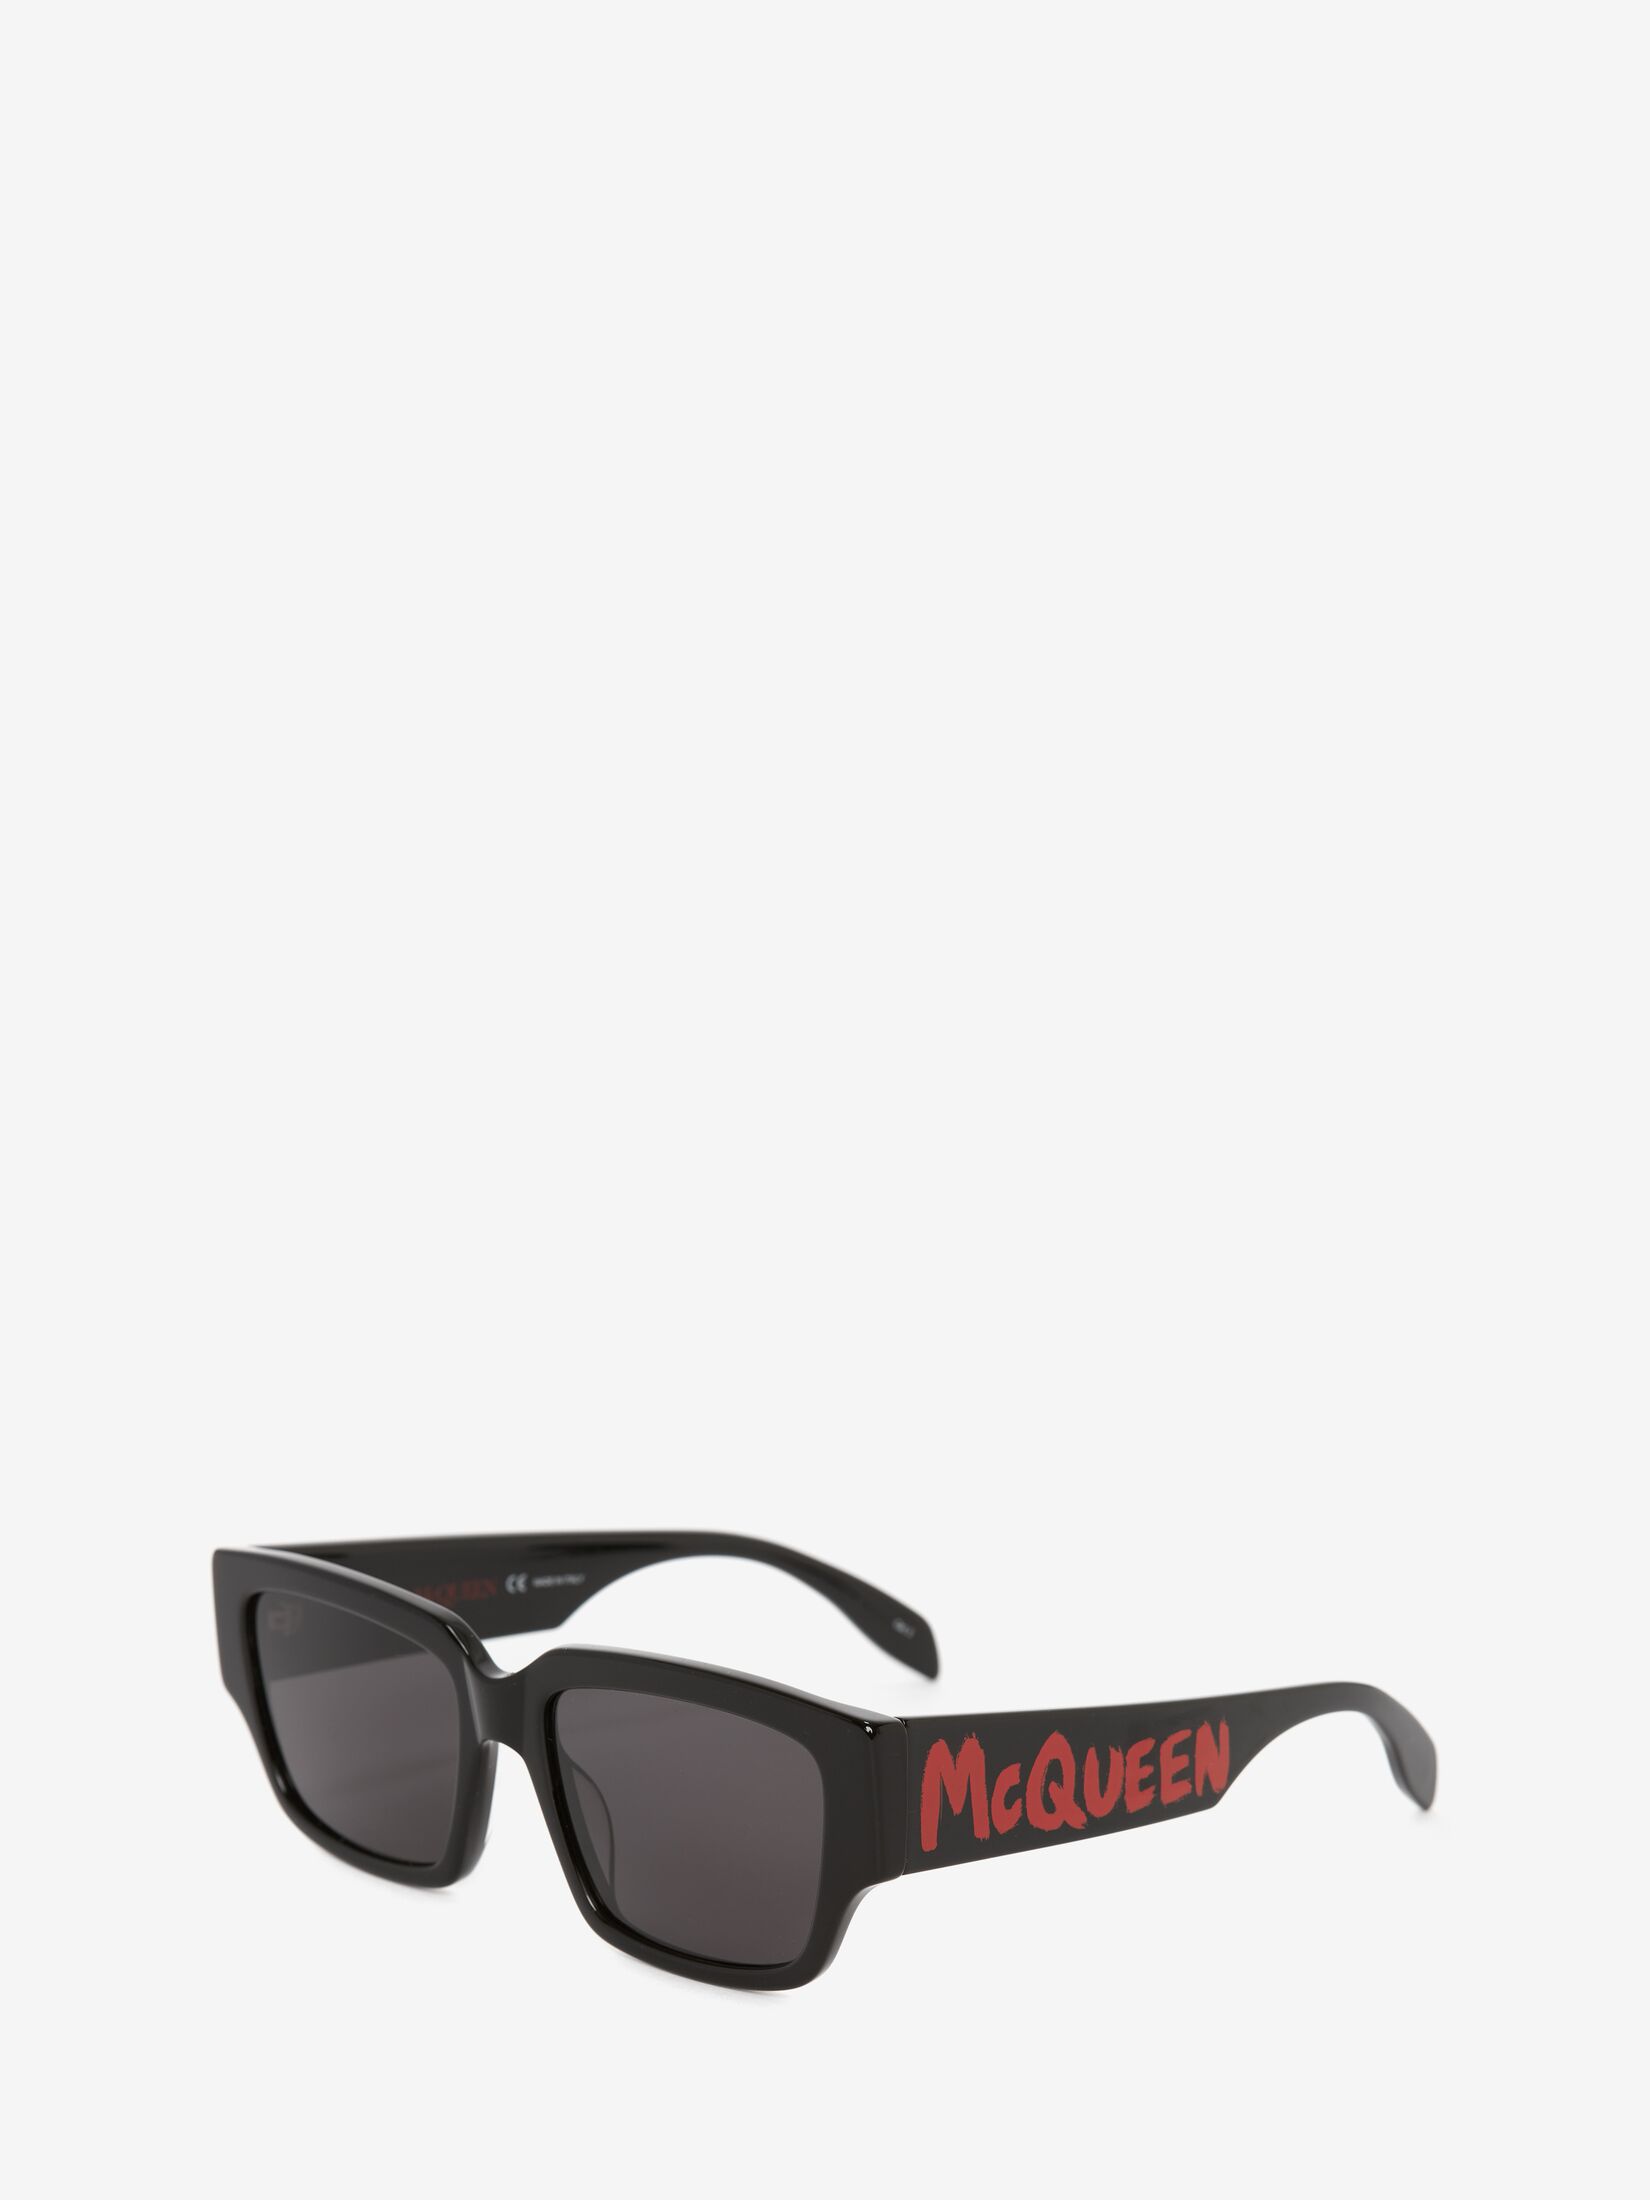 McQueen Graffiti Rectangular Sunglasses